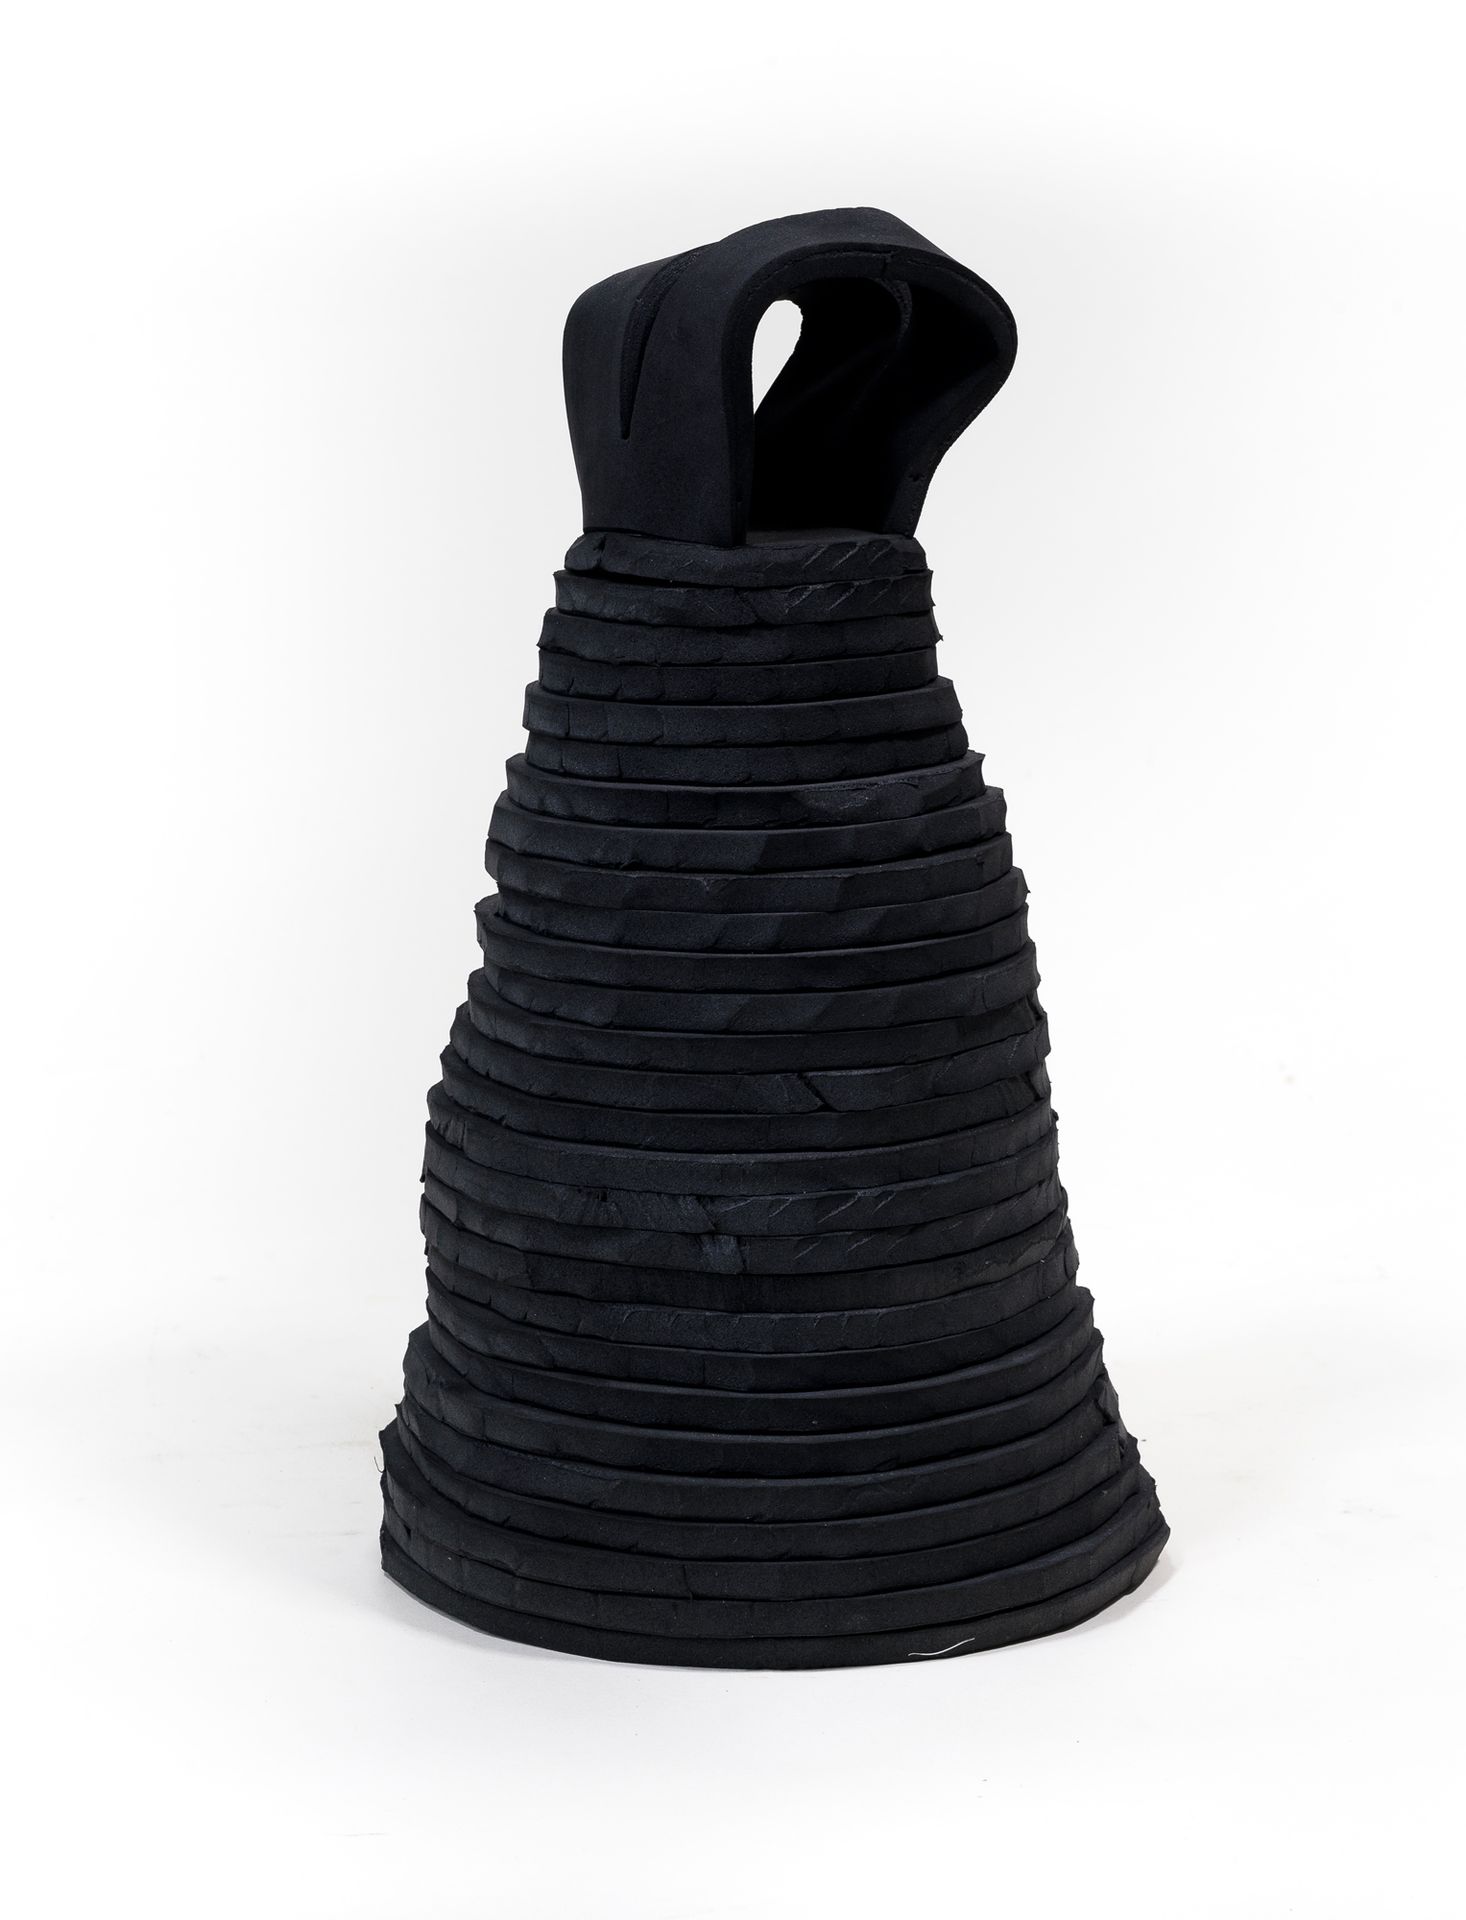 Jean-Antoine HIERRO (ne en 1960) Dress with grey layers, 2008
Neoprene foam scul&hellip;